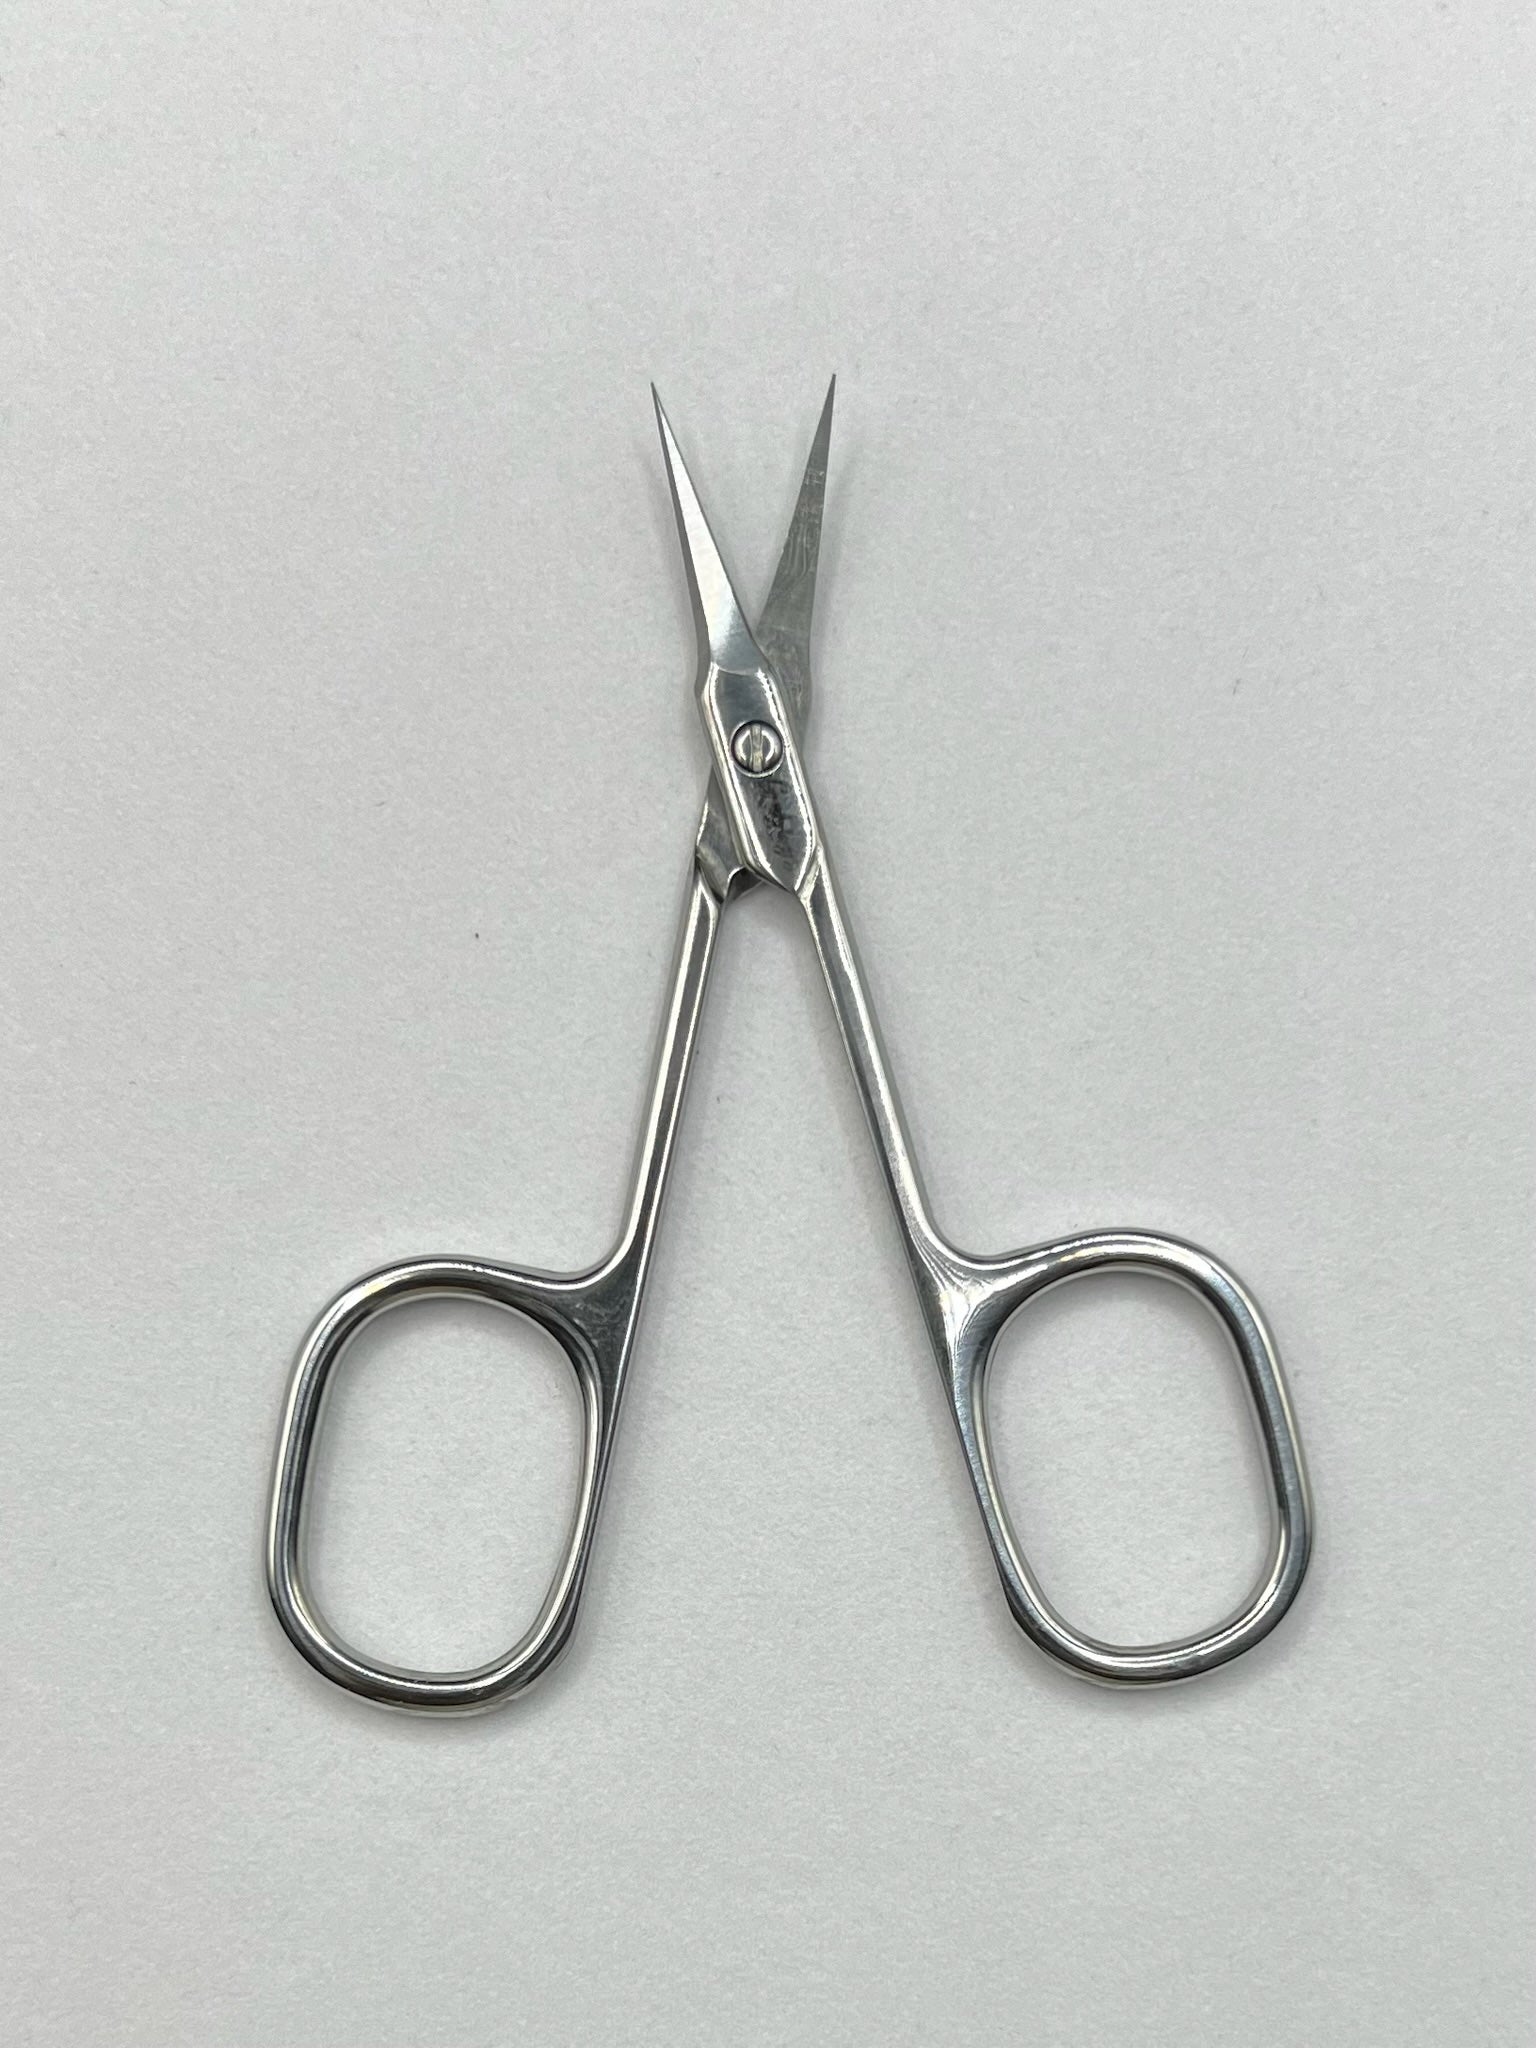 Cuticle Curved Scissors